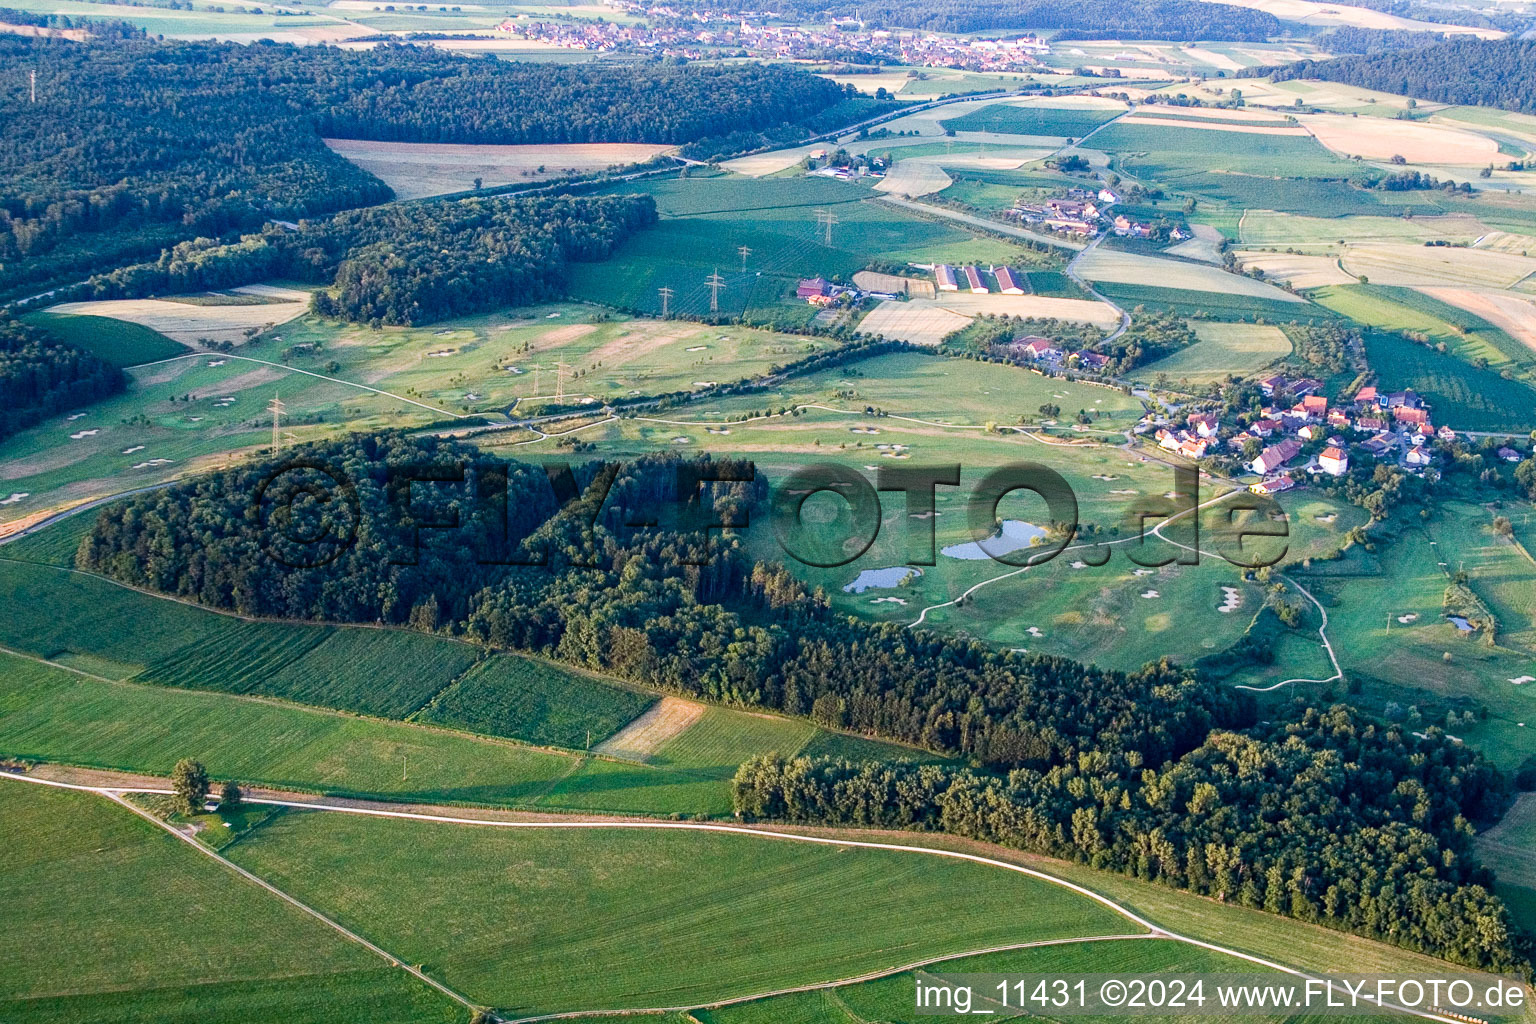 Luftbild von Gelände des Golfplatz Golfclub Steisslingen e.V. am Bodensee in Steißlingen im Bundesland Baden-Württemberg, Deutschland